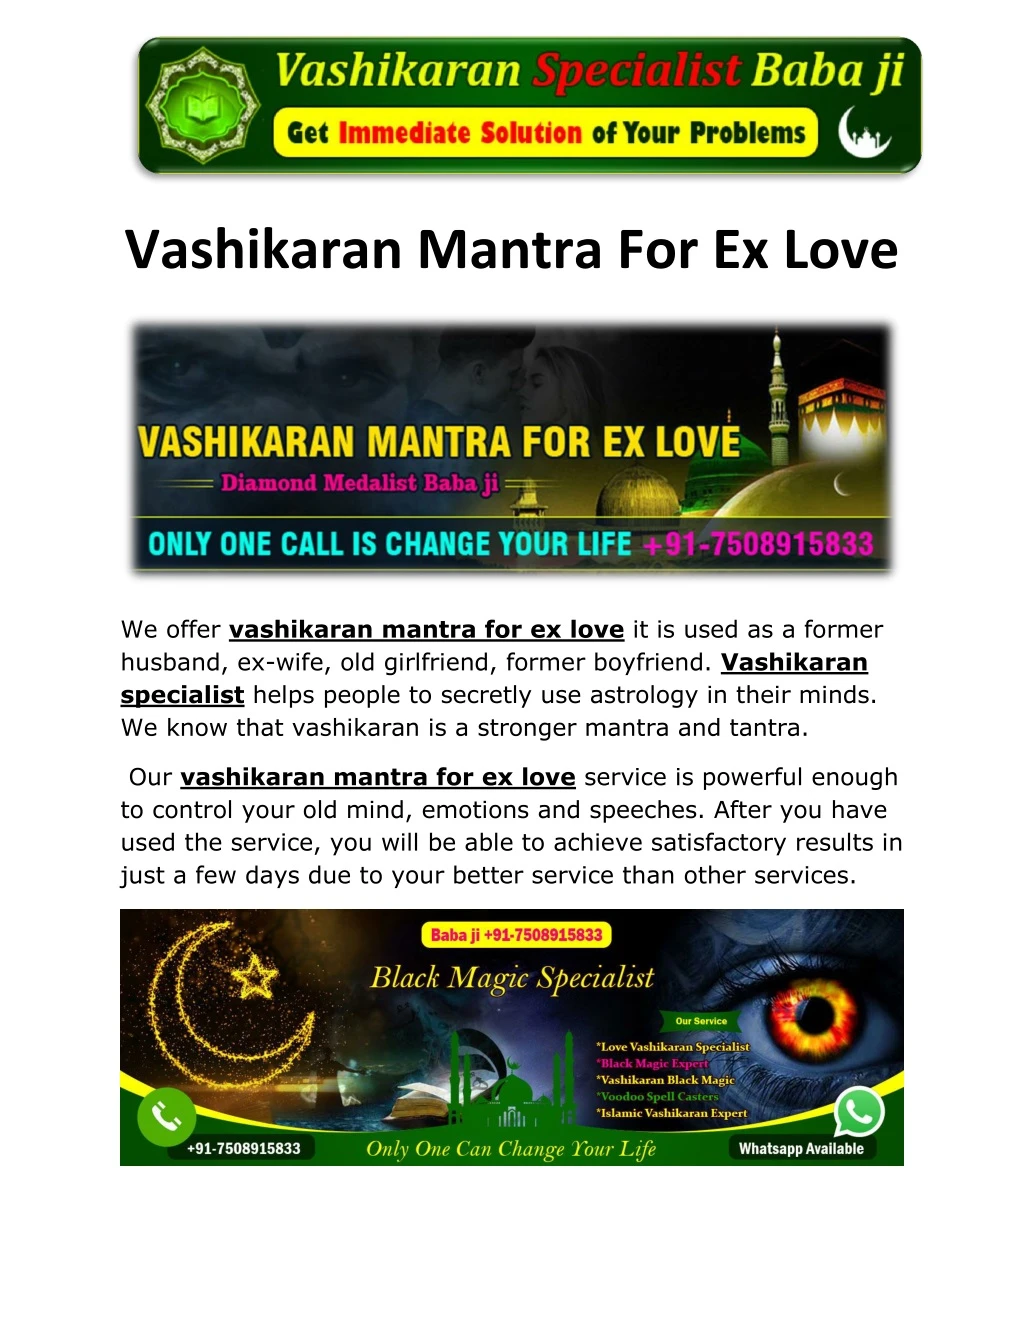 vashikaran mantra for ex love